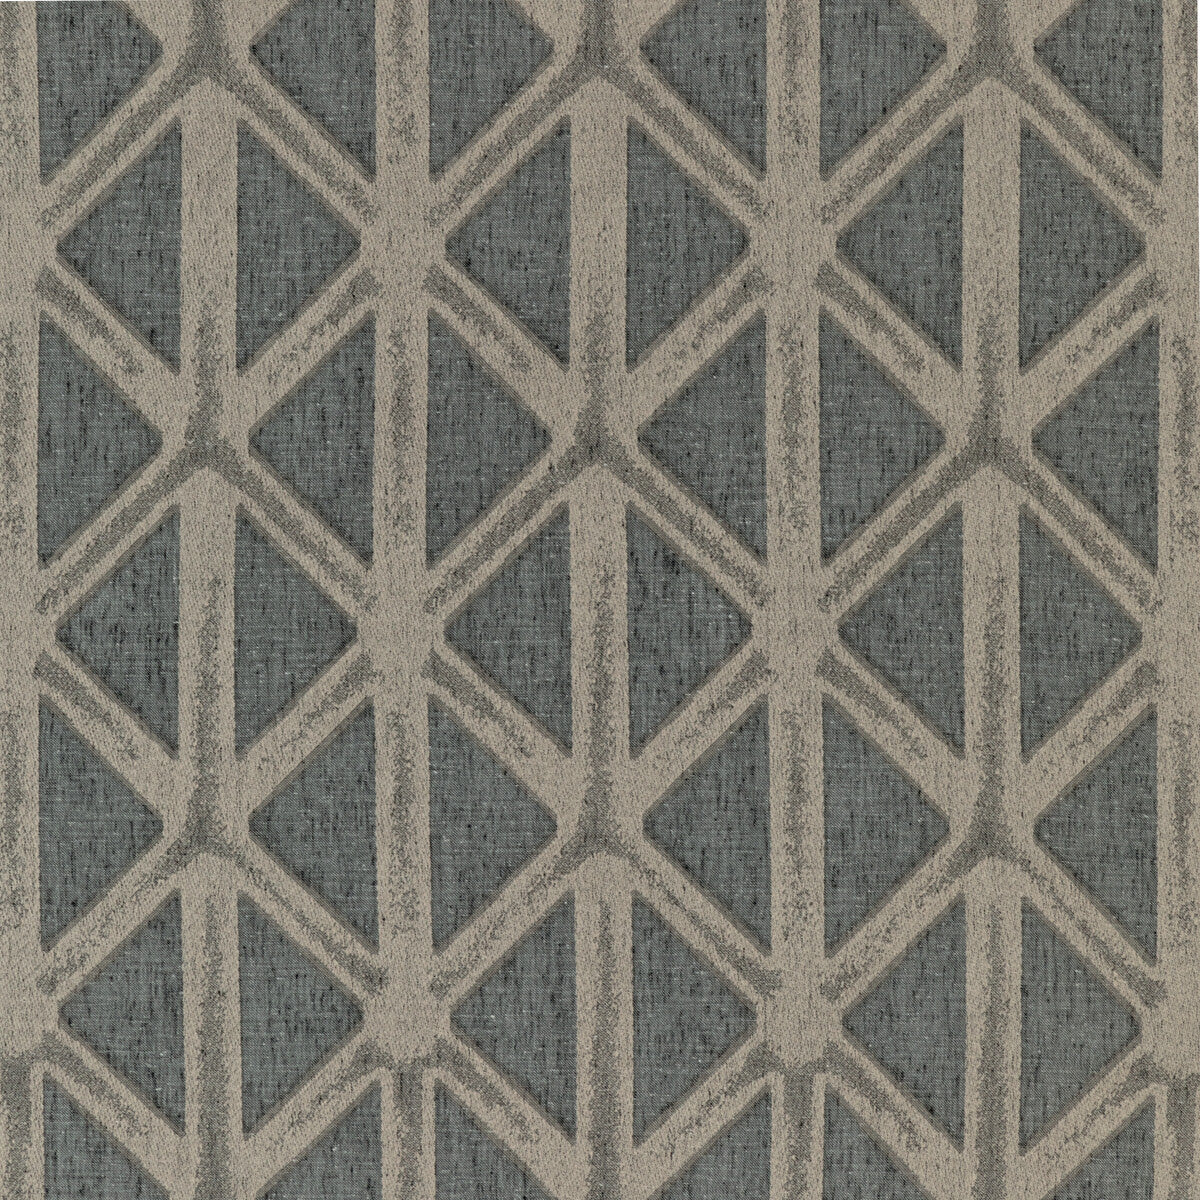 Kravet Basics fabric in 4763-21 color - pattern 4763.21.0 - by Kravet Basics